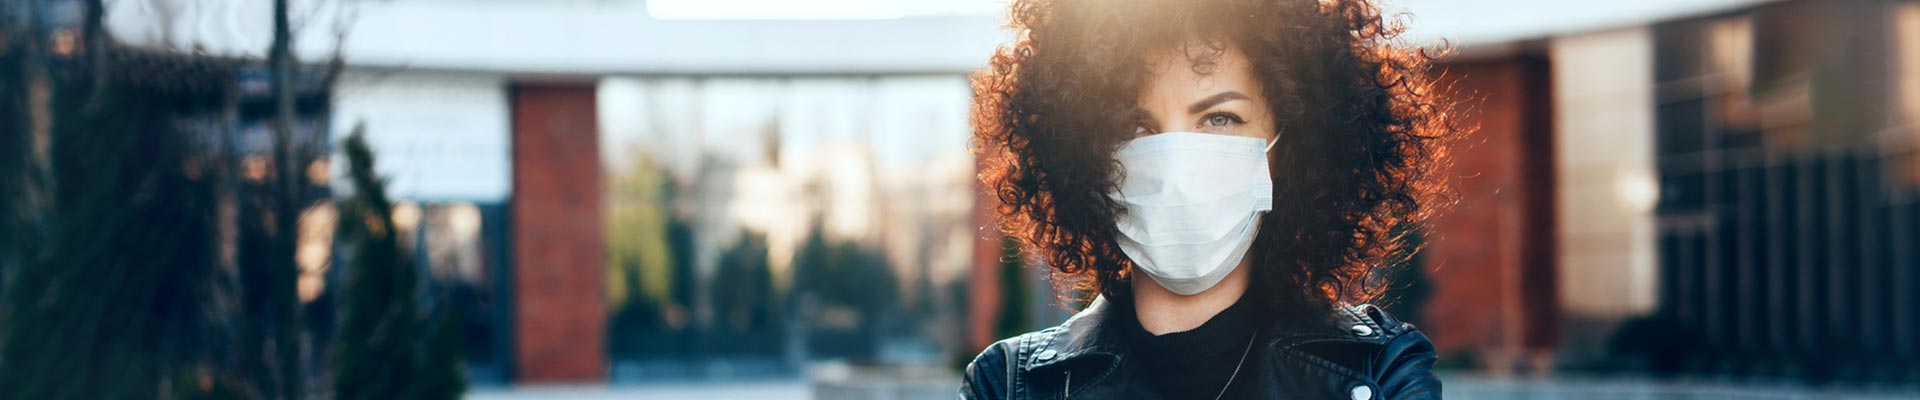 Abbildung einer Frau mit Maske zur Veranschaulichung der Corona-Pandemie